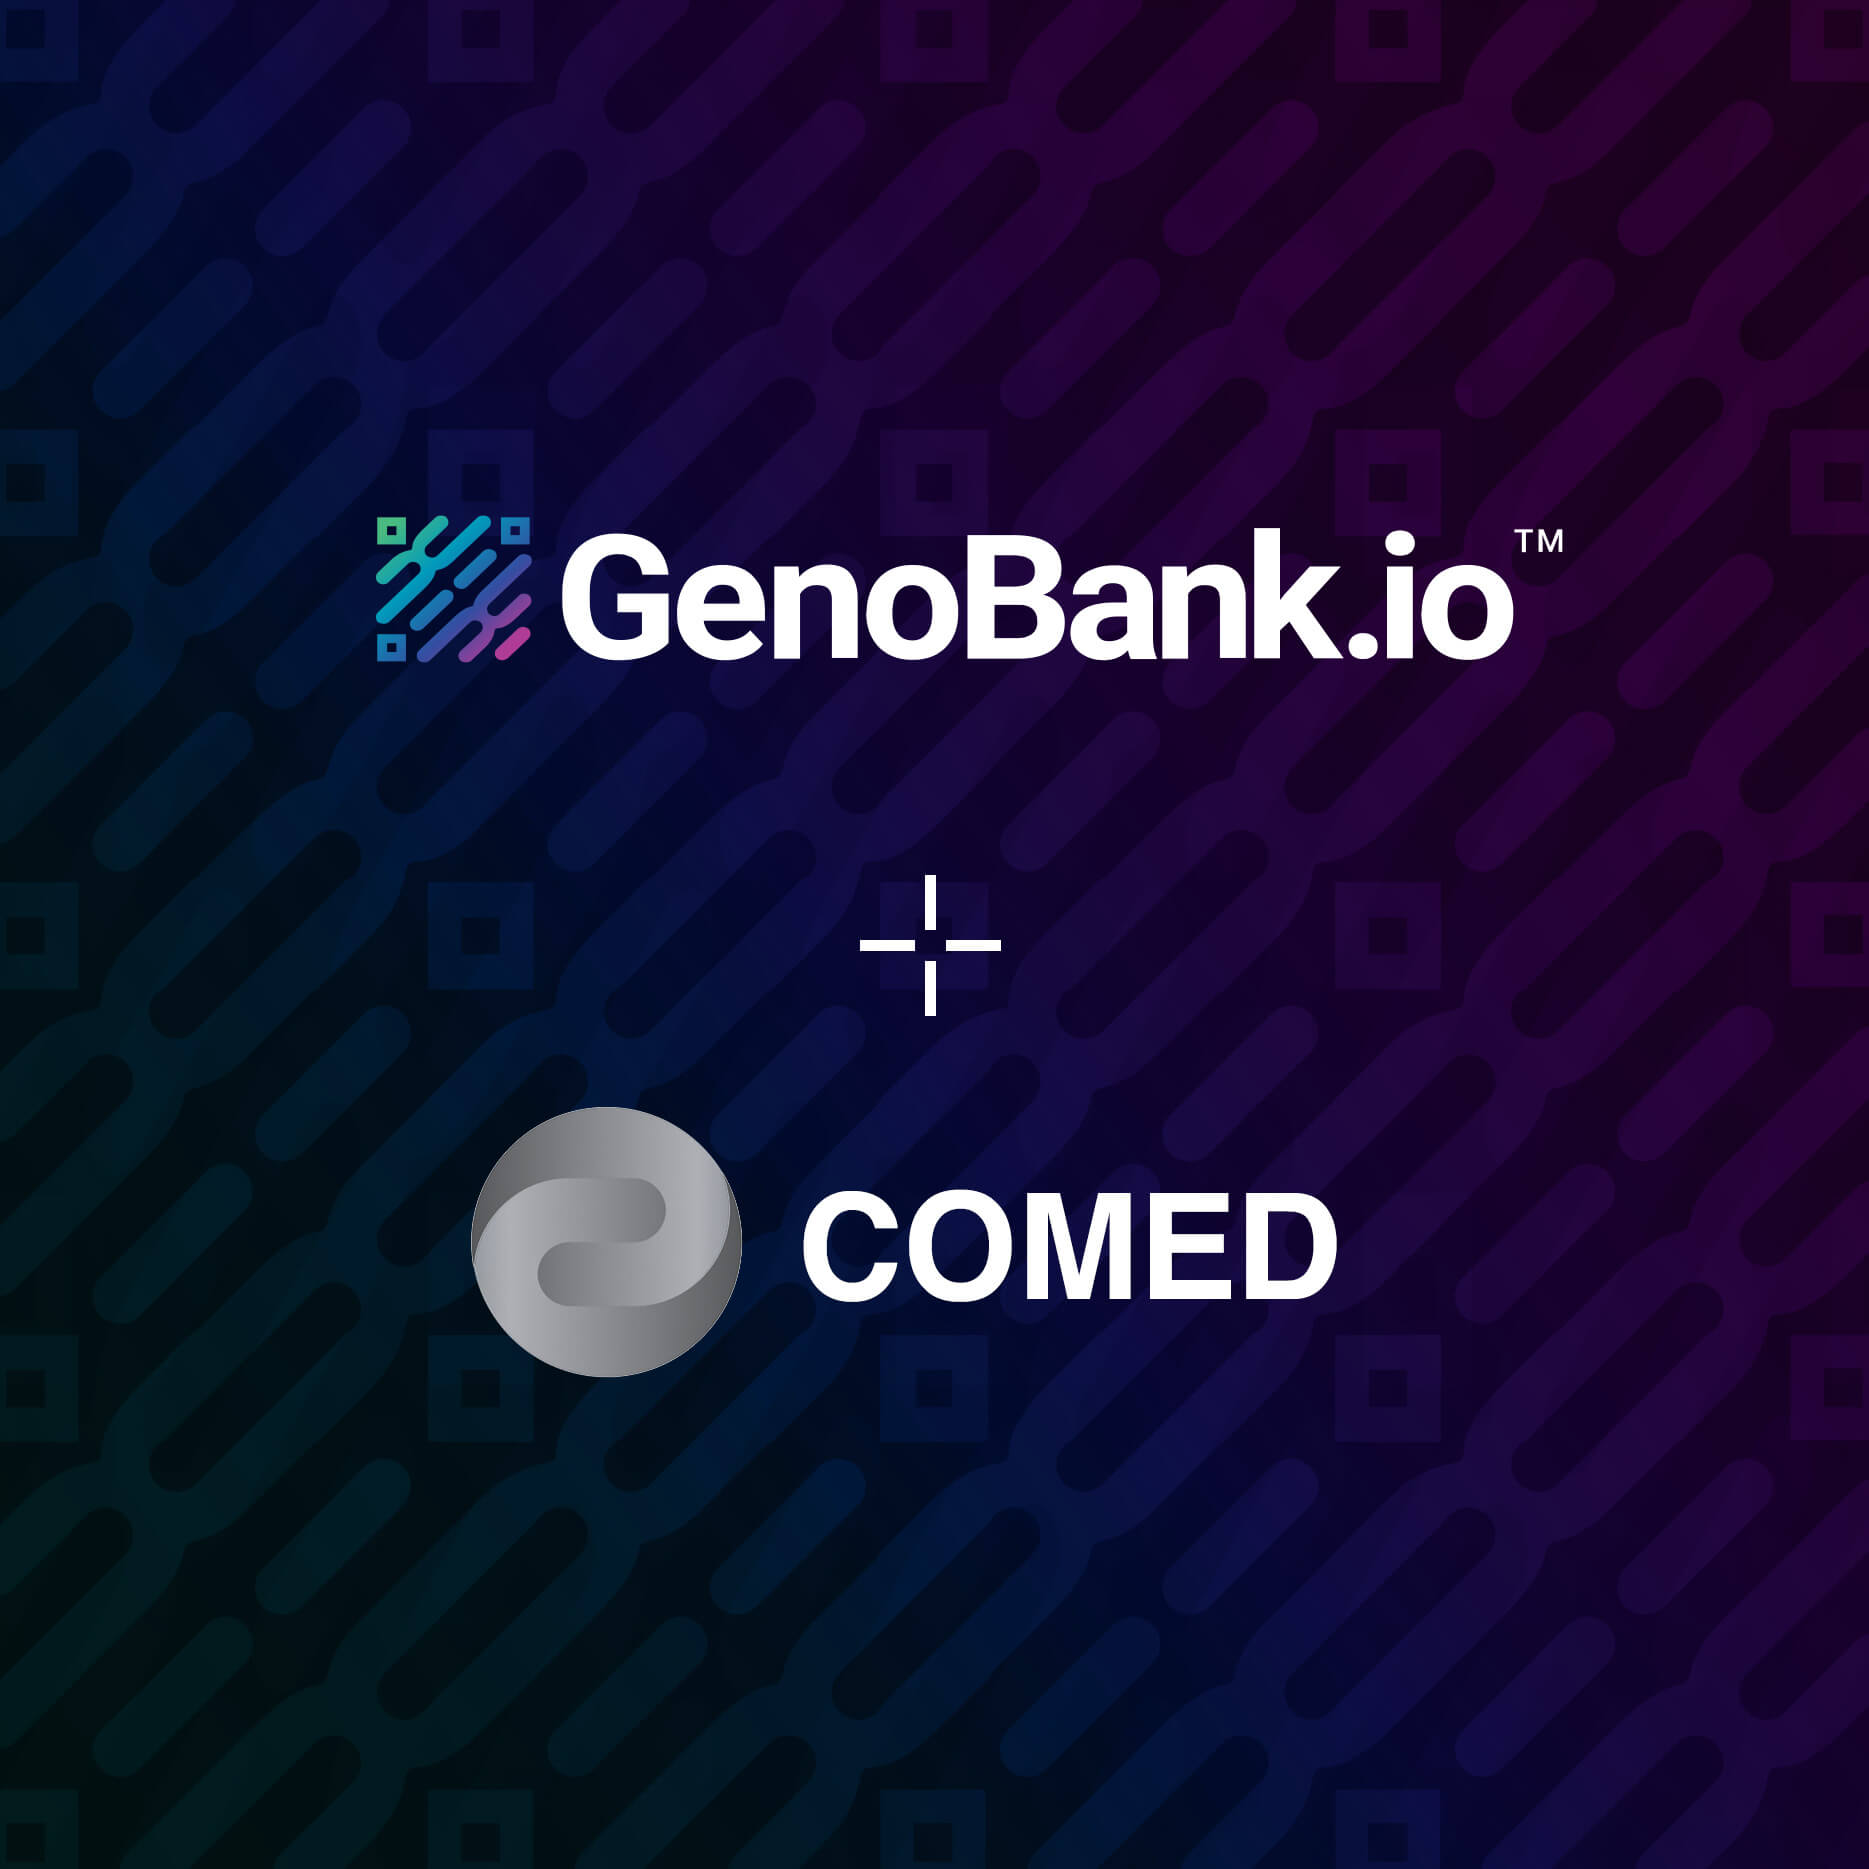 Comed y GenoBank.io unen esfuerzos contra la falsificación de resultados de pruebas COVID19 usando Blockchain